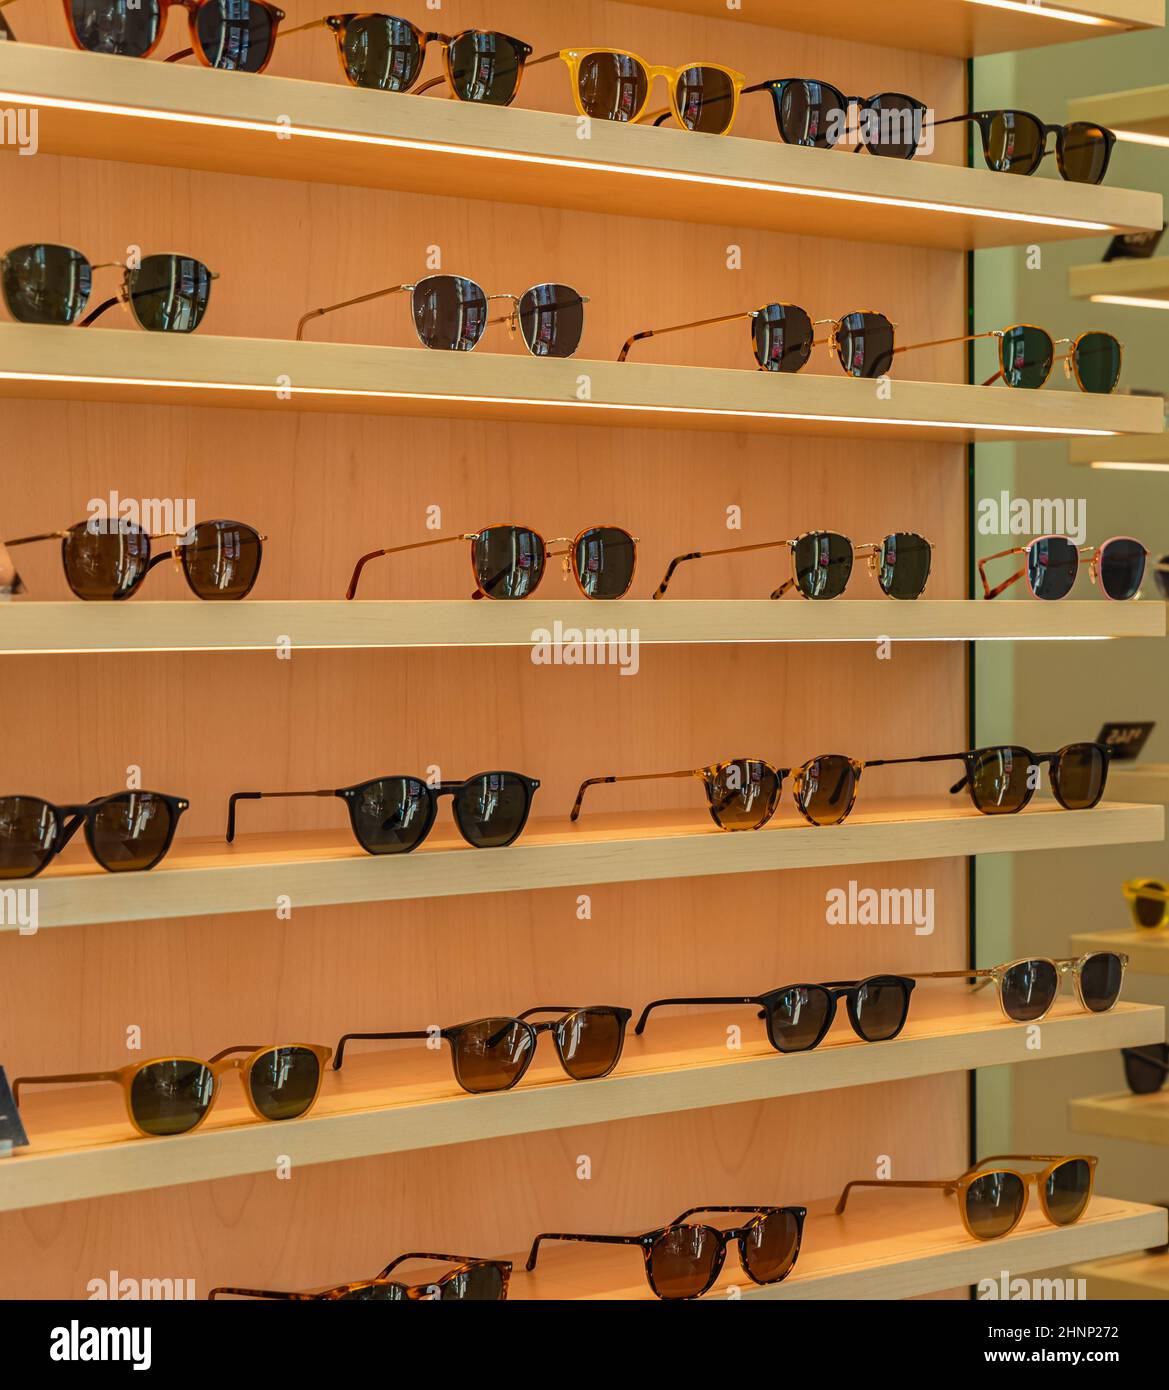 Trendige Sonnenbrillen, Sommerbrillen, Modekollektion, verschiedene Sonnenbrillen auf einem Stand. Brillen Werbeaktionen mit Garantie auf Holzregalen. Niemand Stockfoto